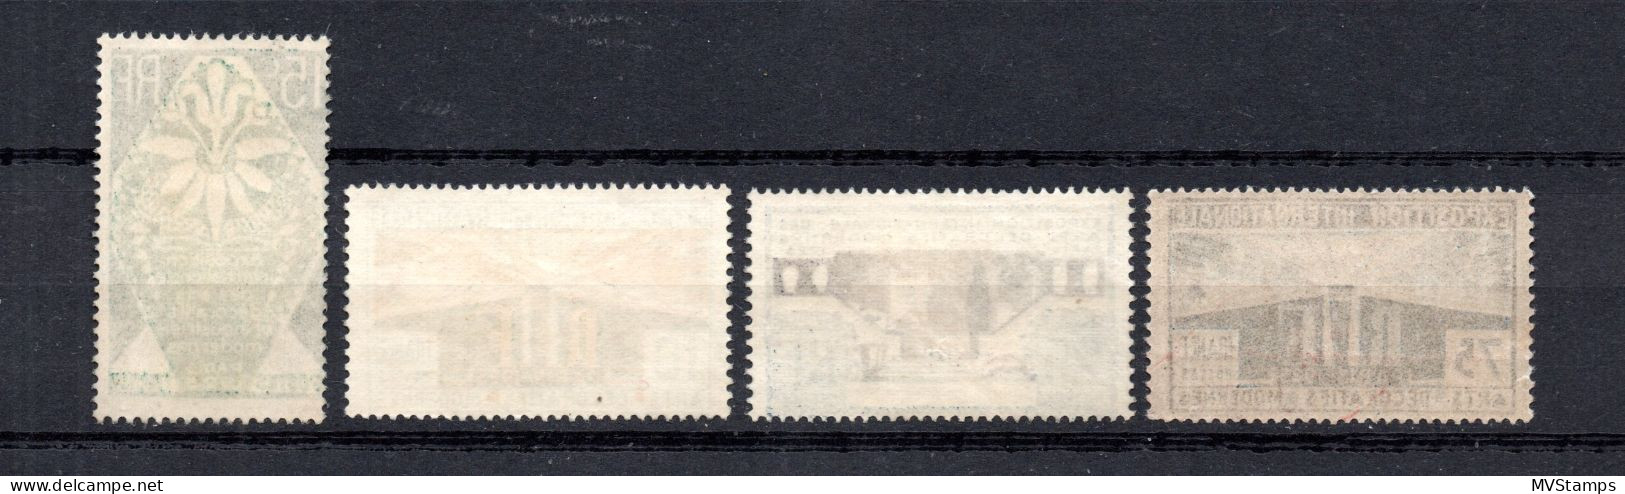 Frankreich 1925 Satz 177/80 Kunsewerbeausstellung Paris Postfrisch - Ongebruikt